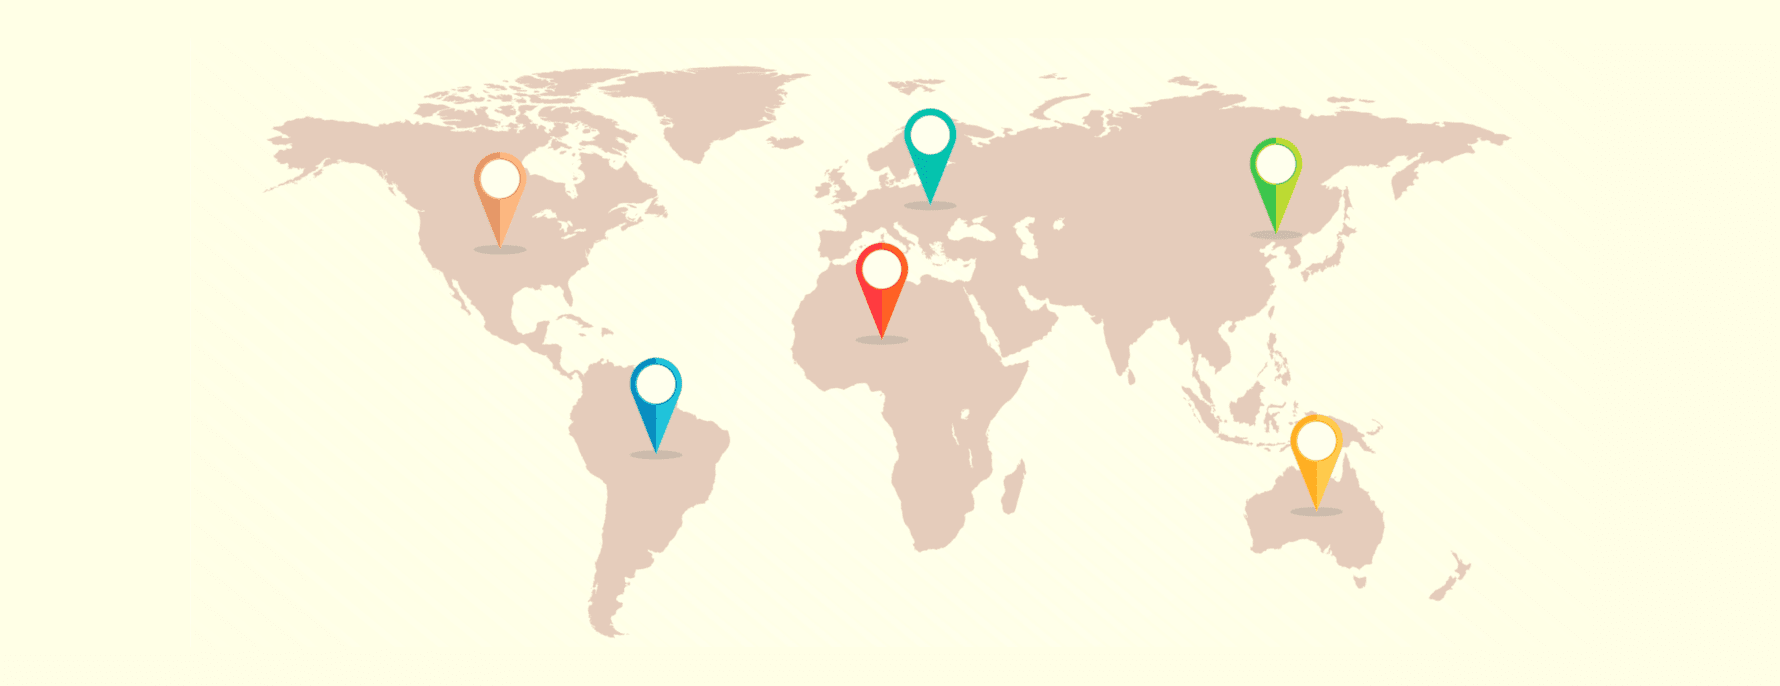 Peta dunia yang menggambarkan berbagai yurisdiksi VPN